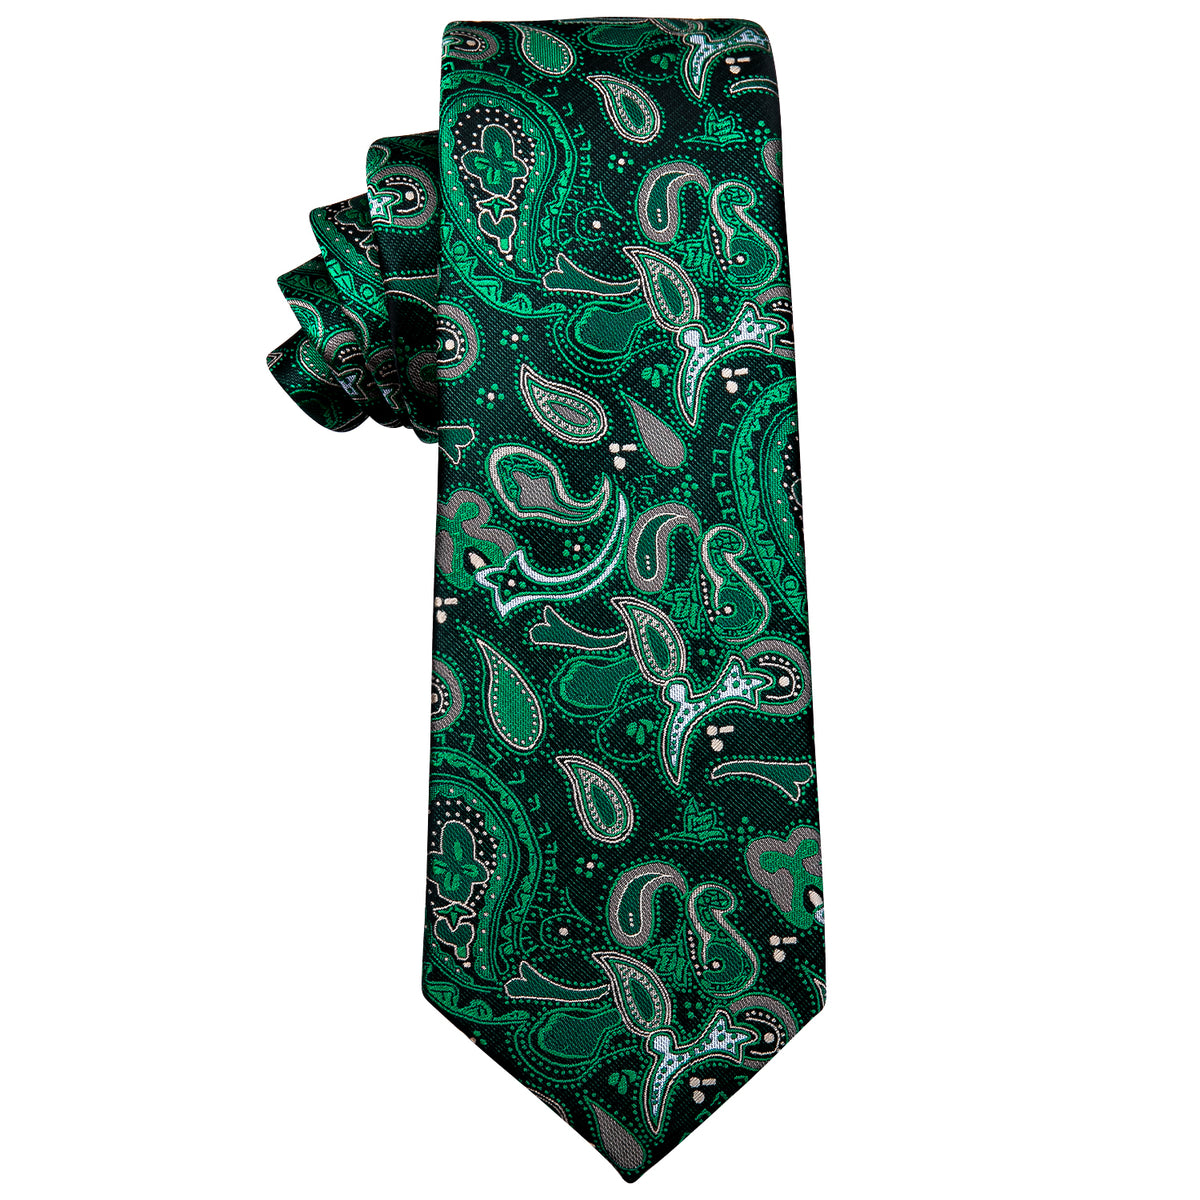 Fashion Green Paisley Silk Necktie with Golden Tie Clip